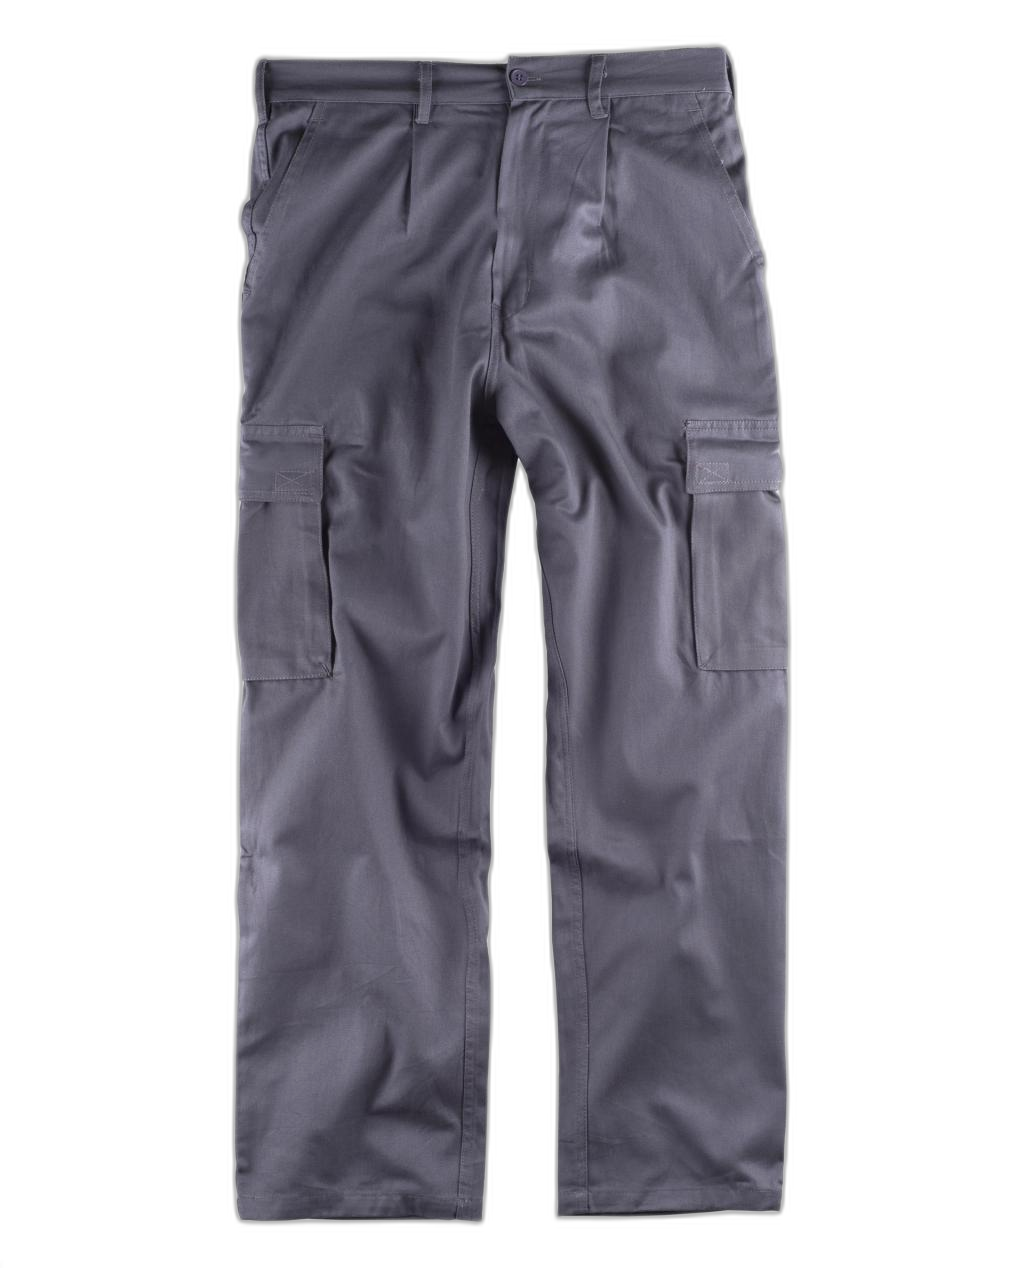 Pantalón con cintura elástica WORKTEAM B1456